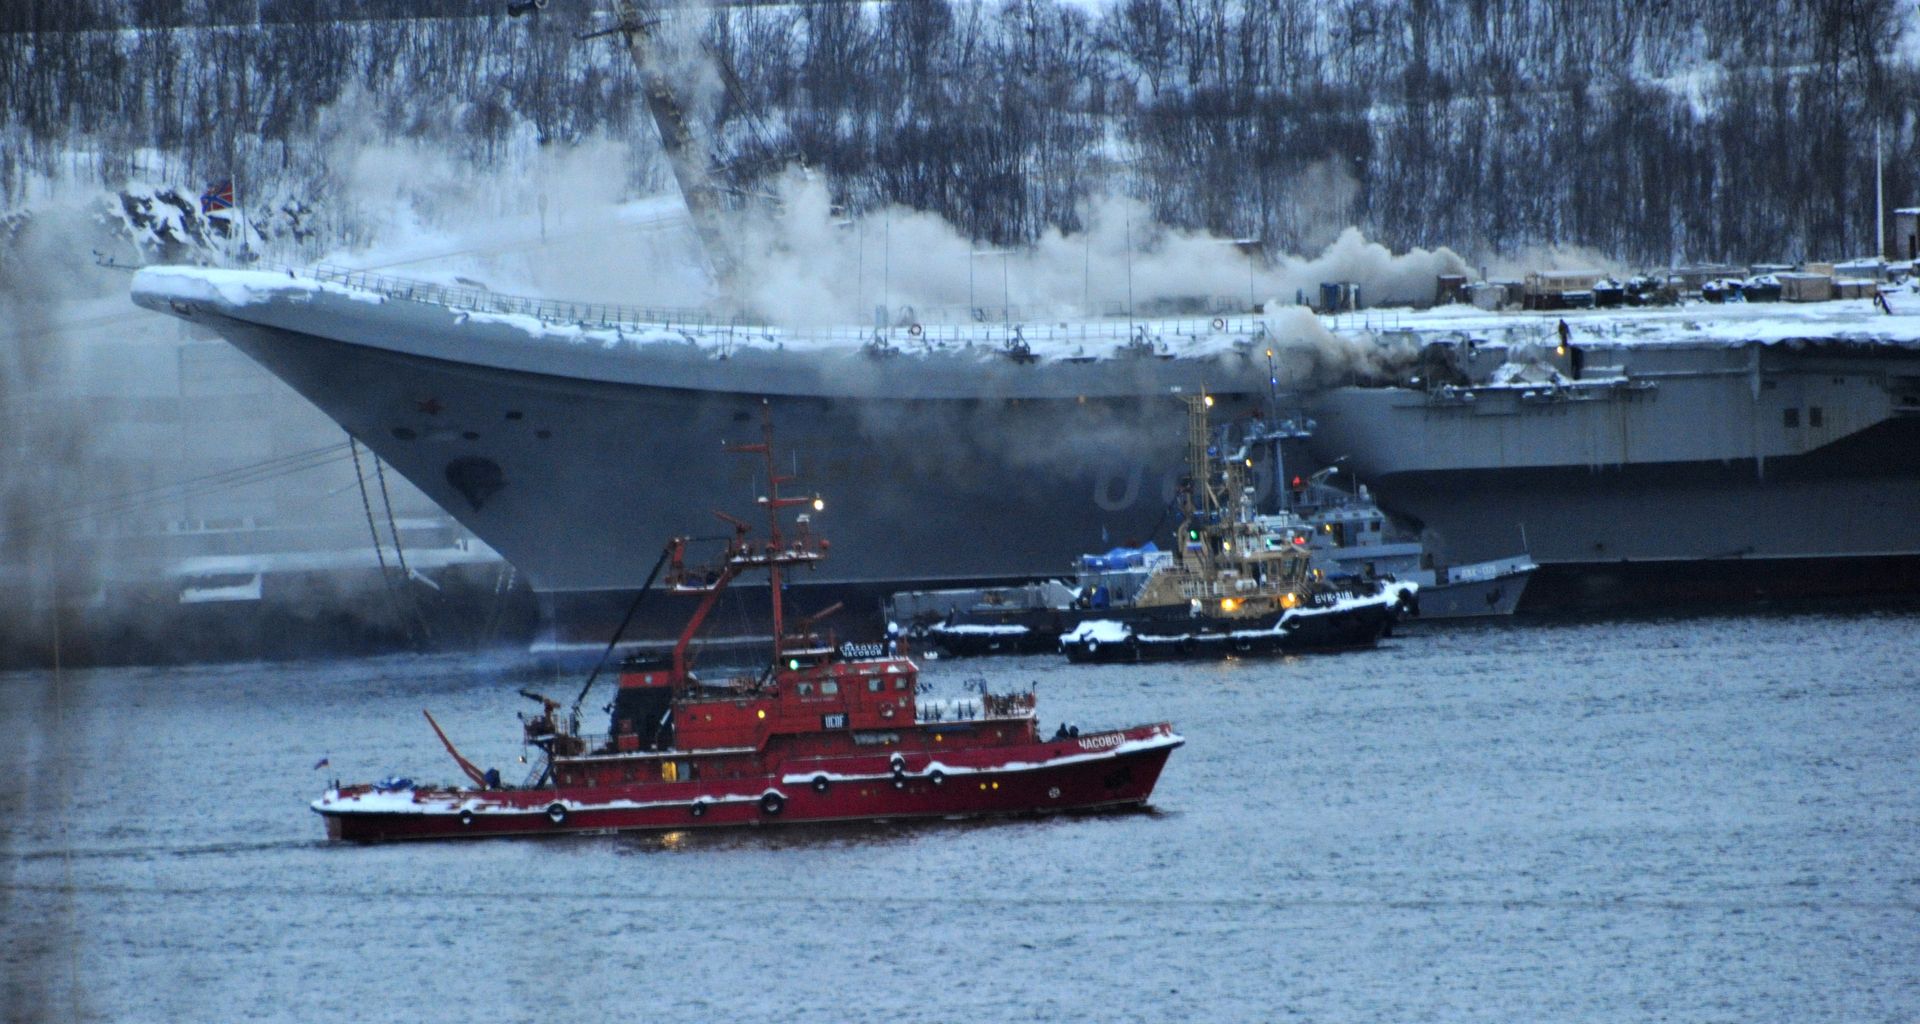 Rosja. Pożar na pokładzie lotniskowca "Admirał Kuzniecow" w Murmańsku